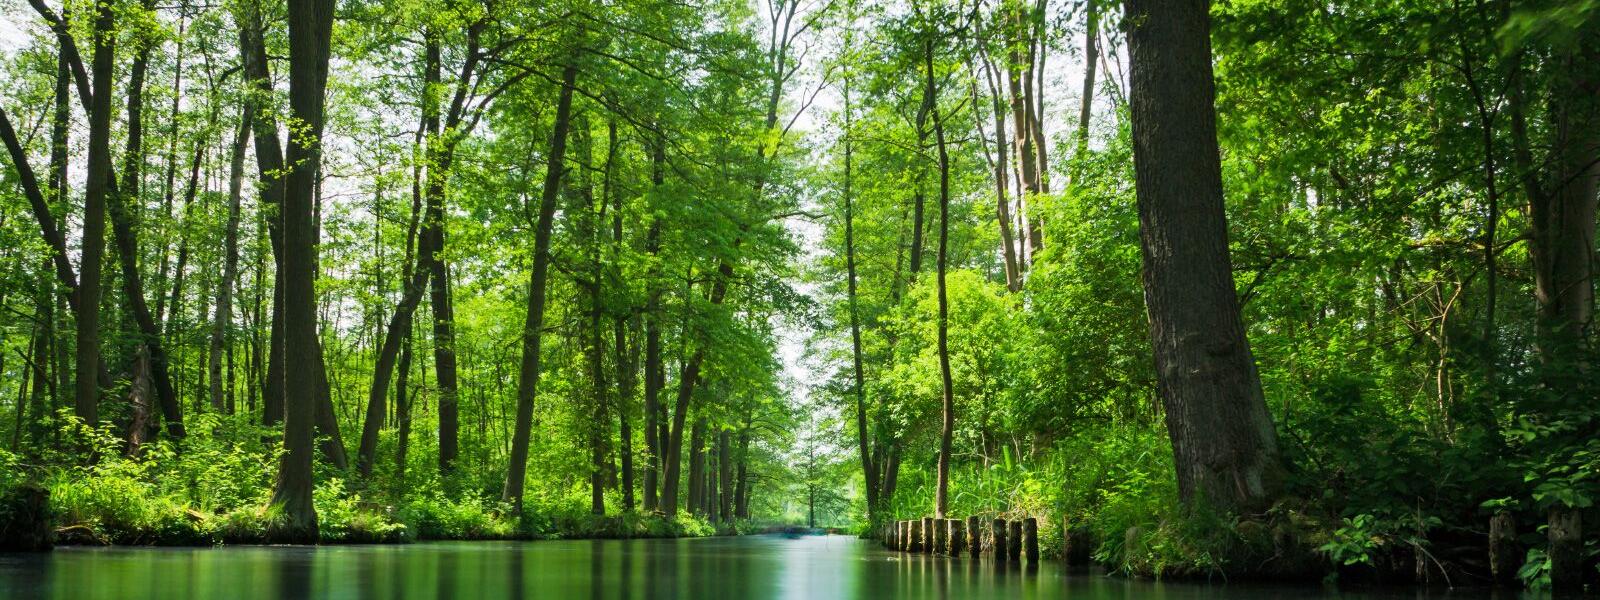 Von Wald gesäumter Kanal im Spreewald